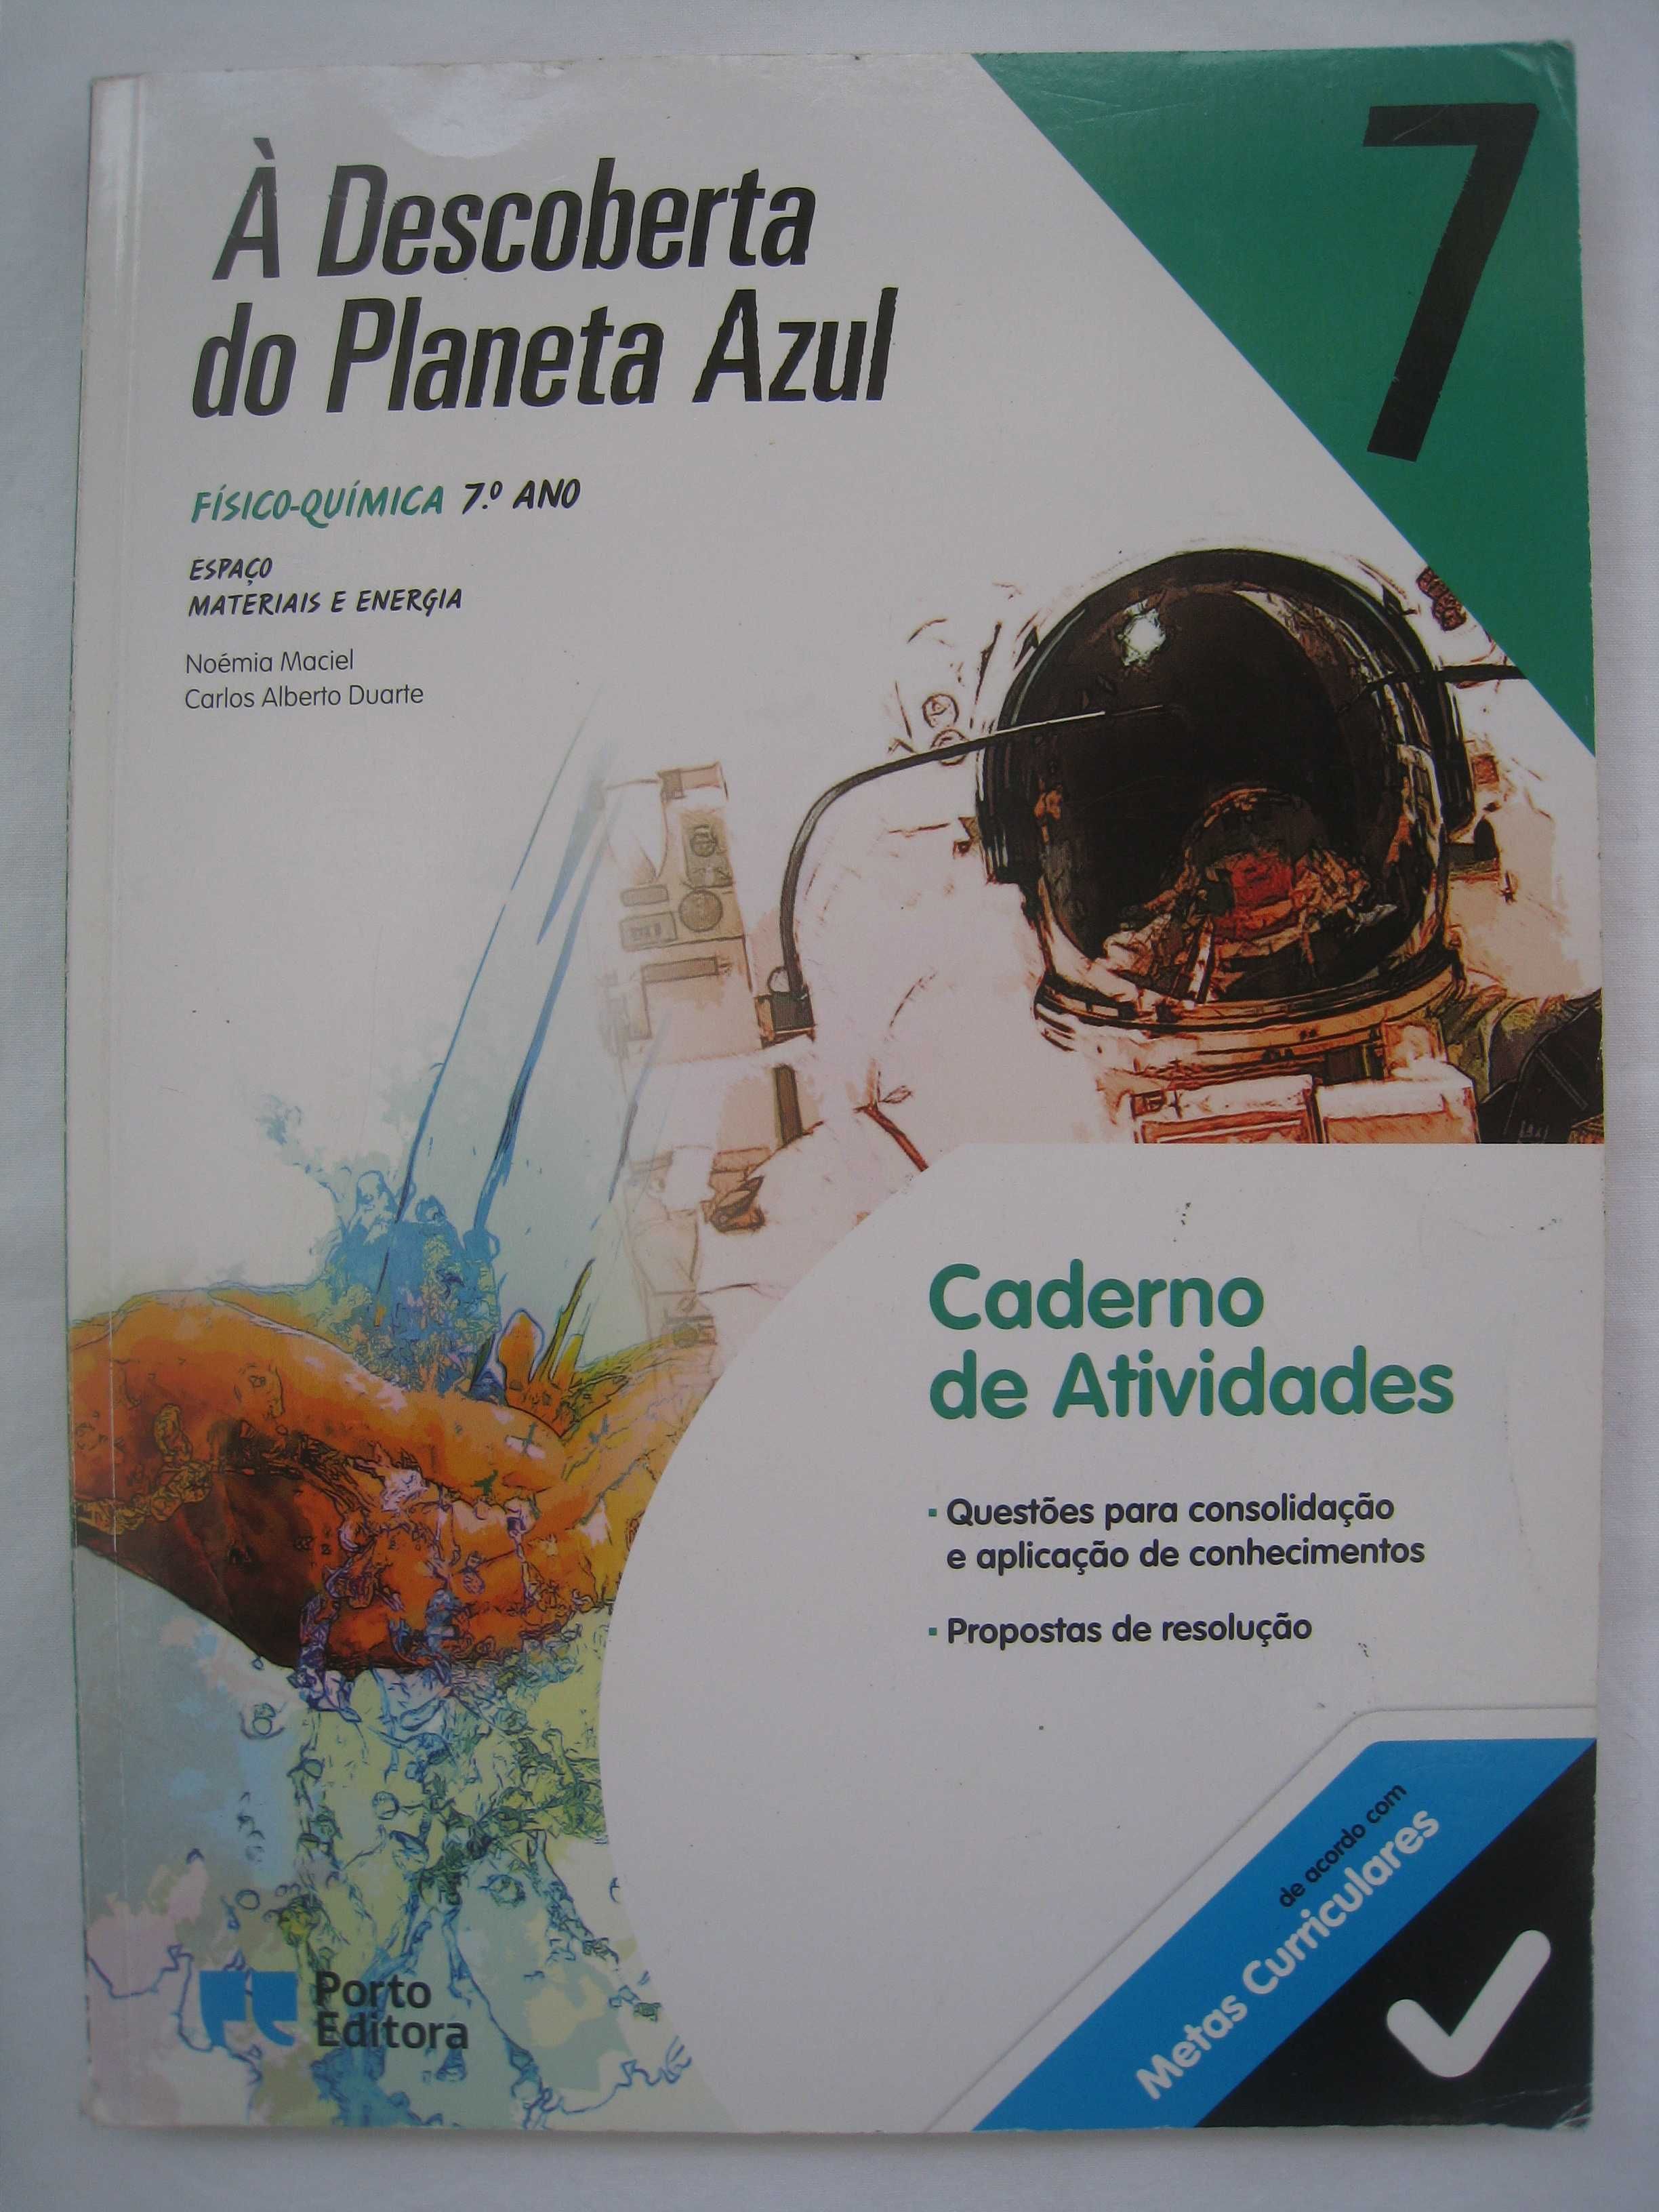 Caderno de atividades À Descoberta do Planeta Azul 7 de Fisico-química